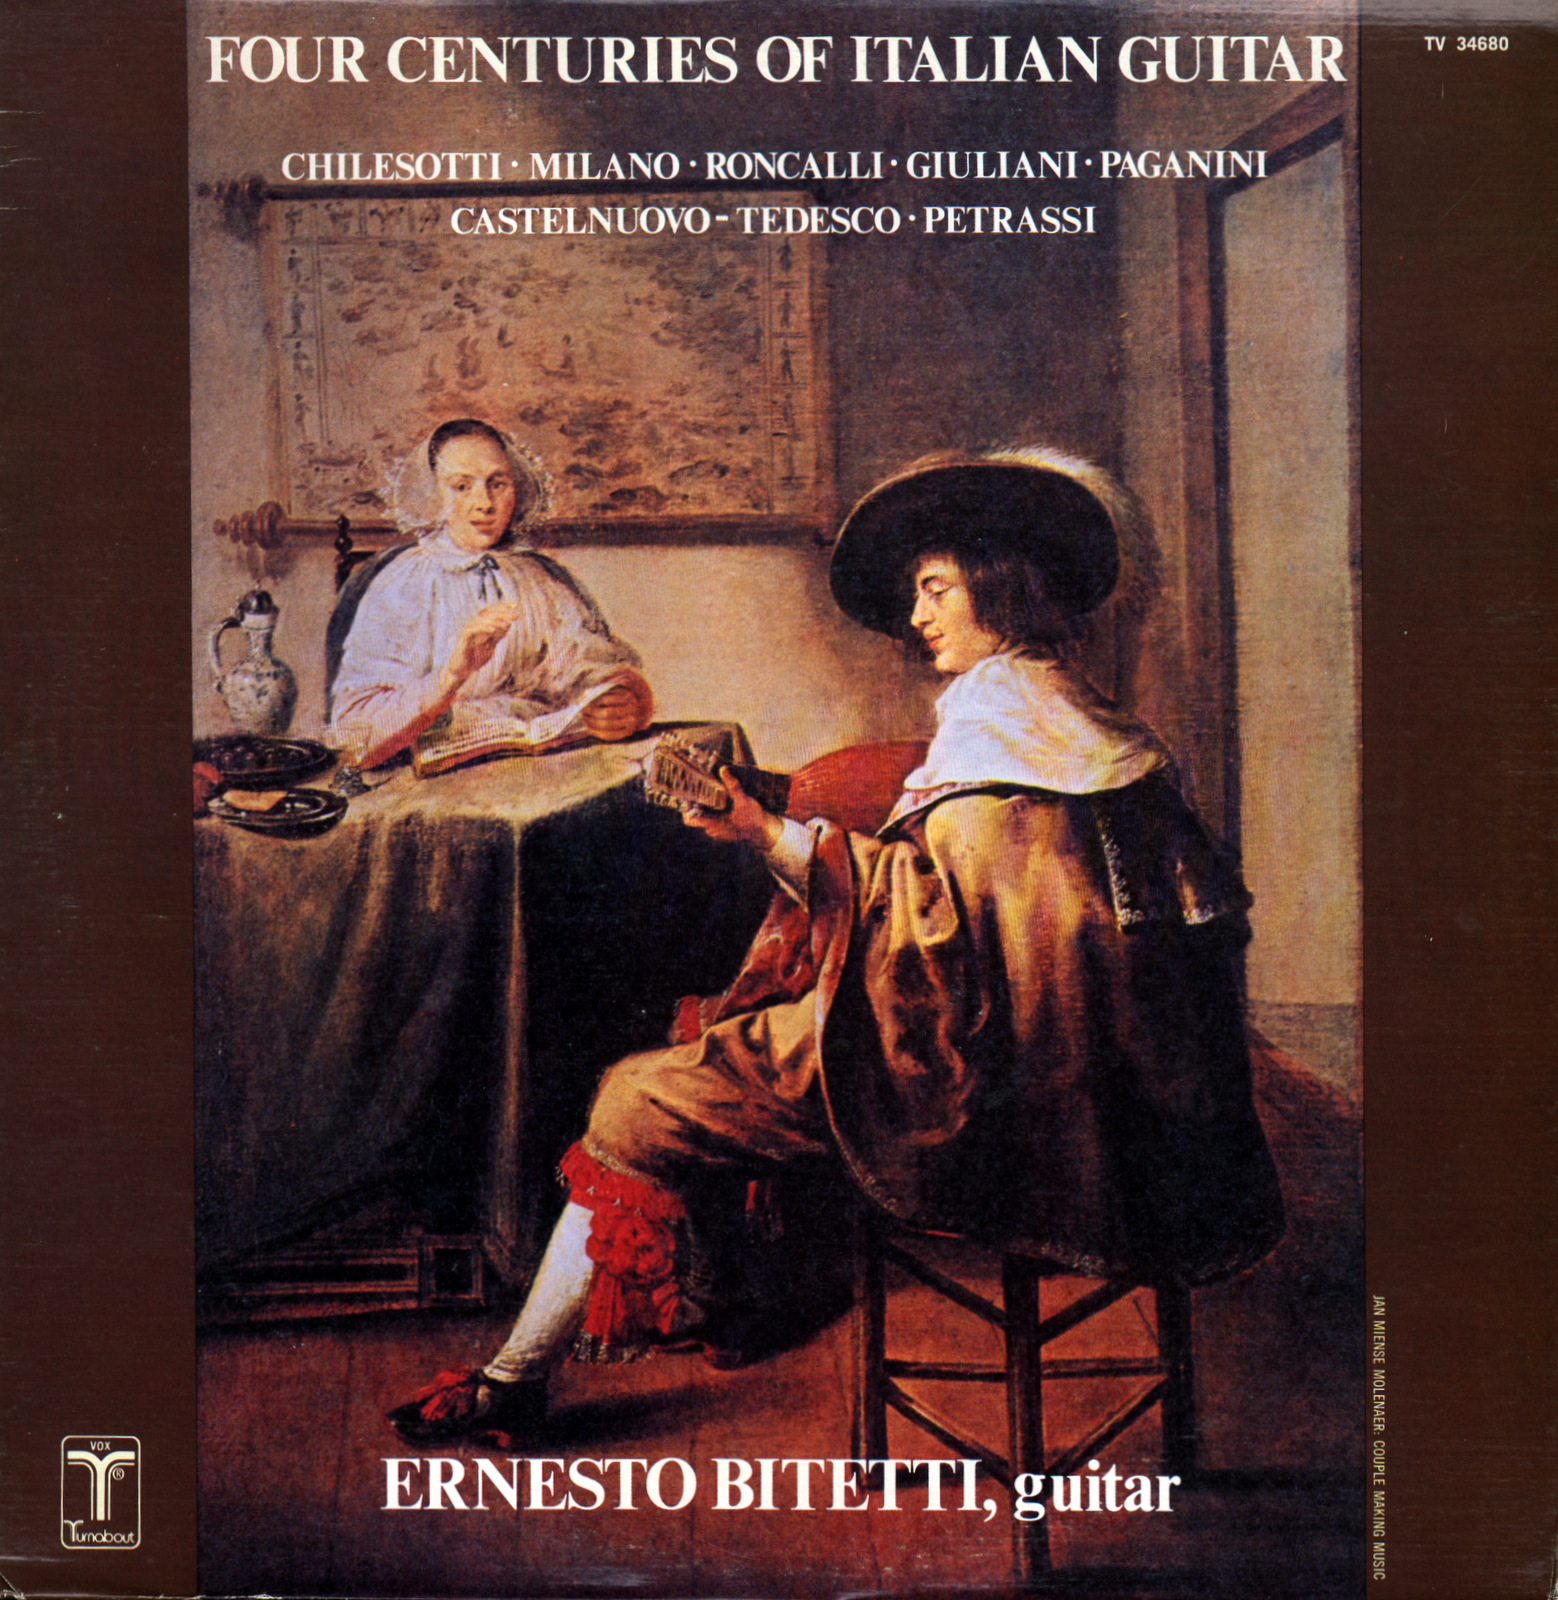 Four Centuries of Italian Guitar